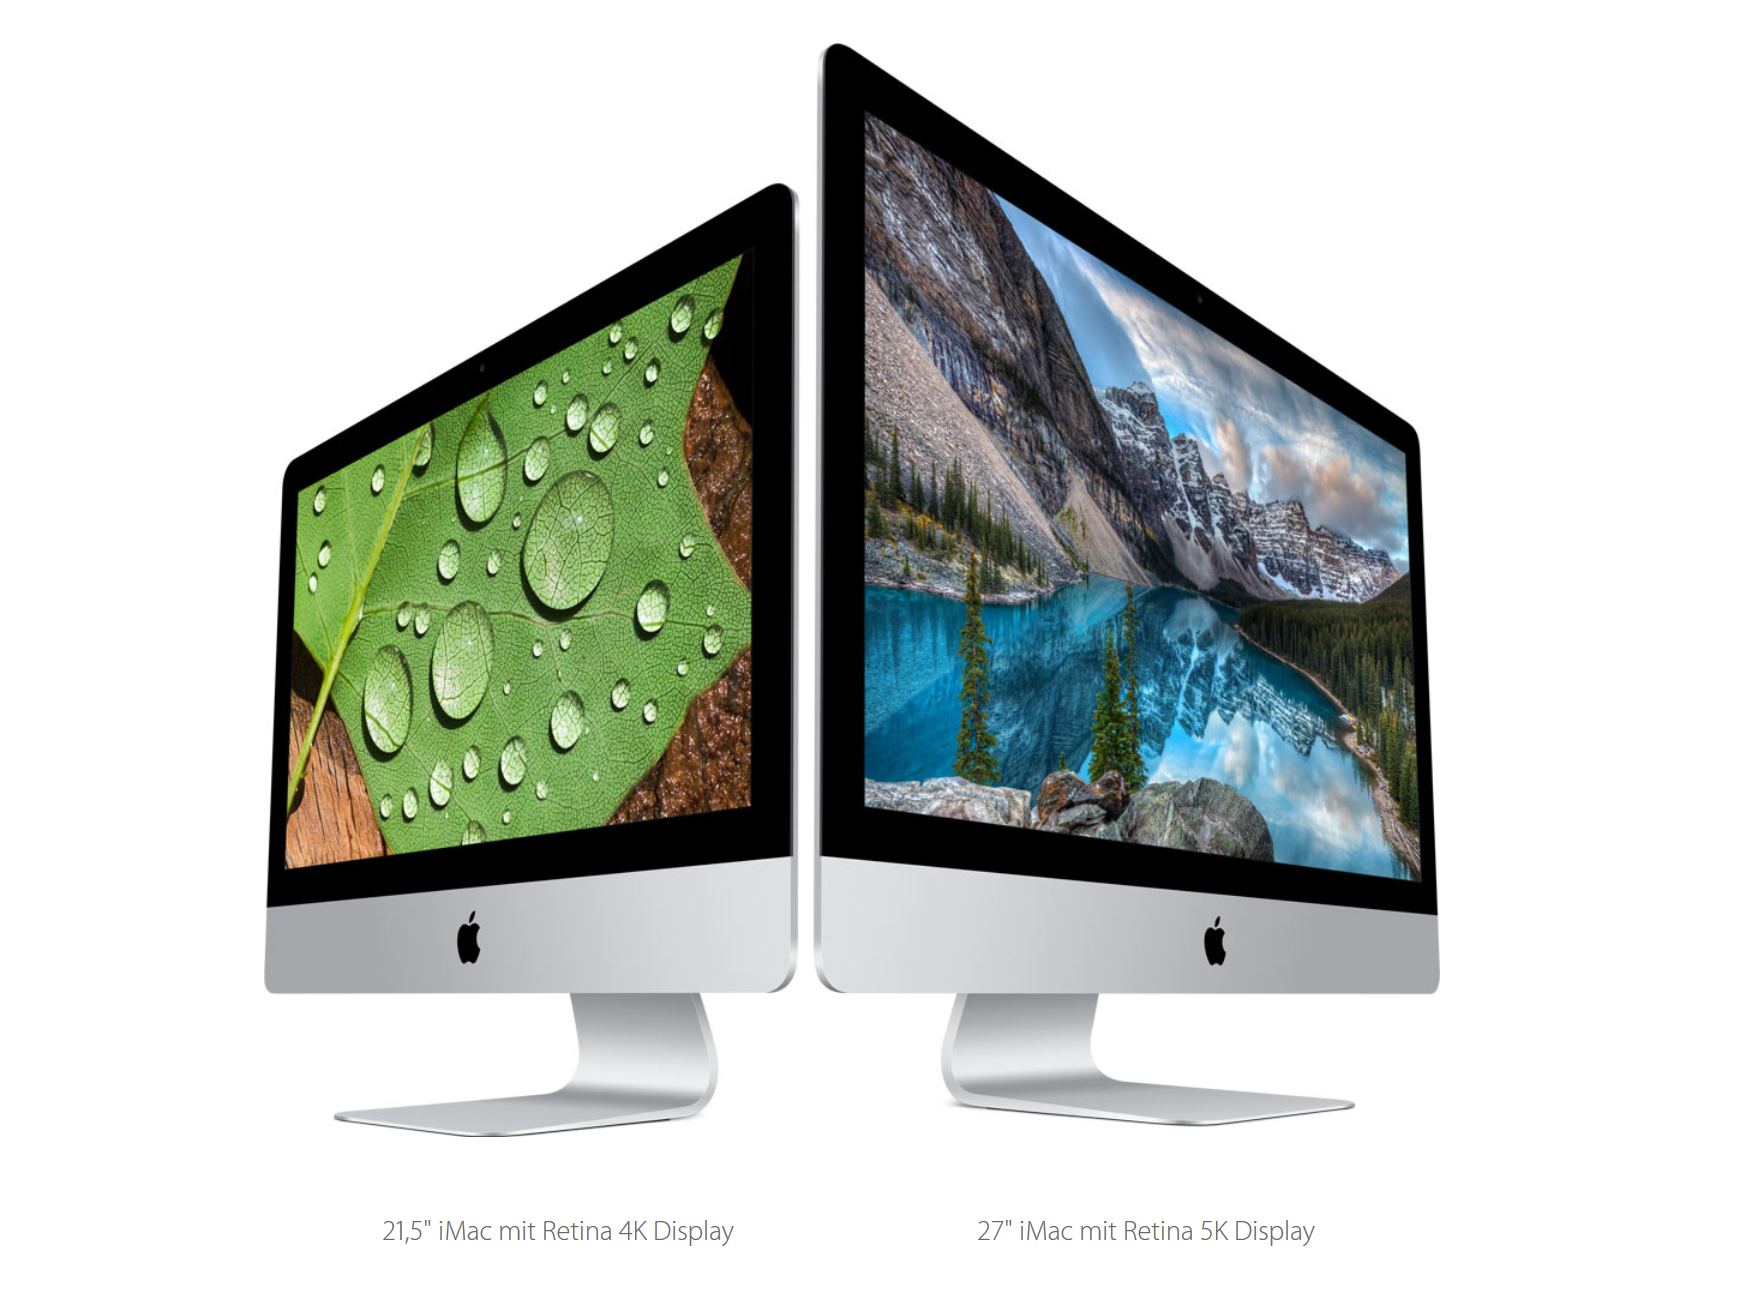 Per Pressemitteilung stellte Apple seine neuen iMac-Modelle vor